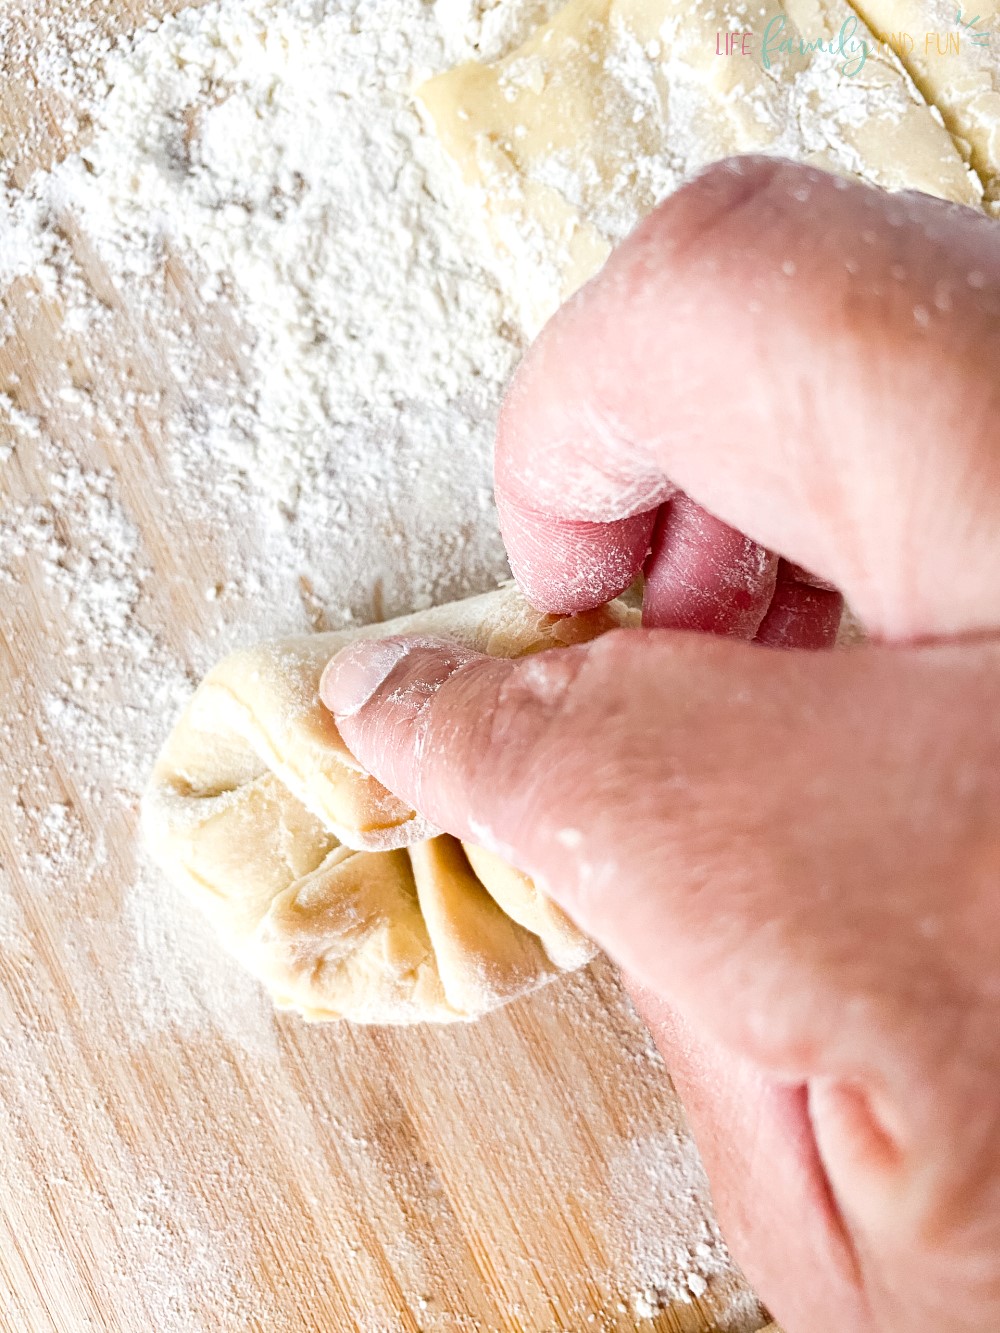 folding dough into balls with flour